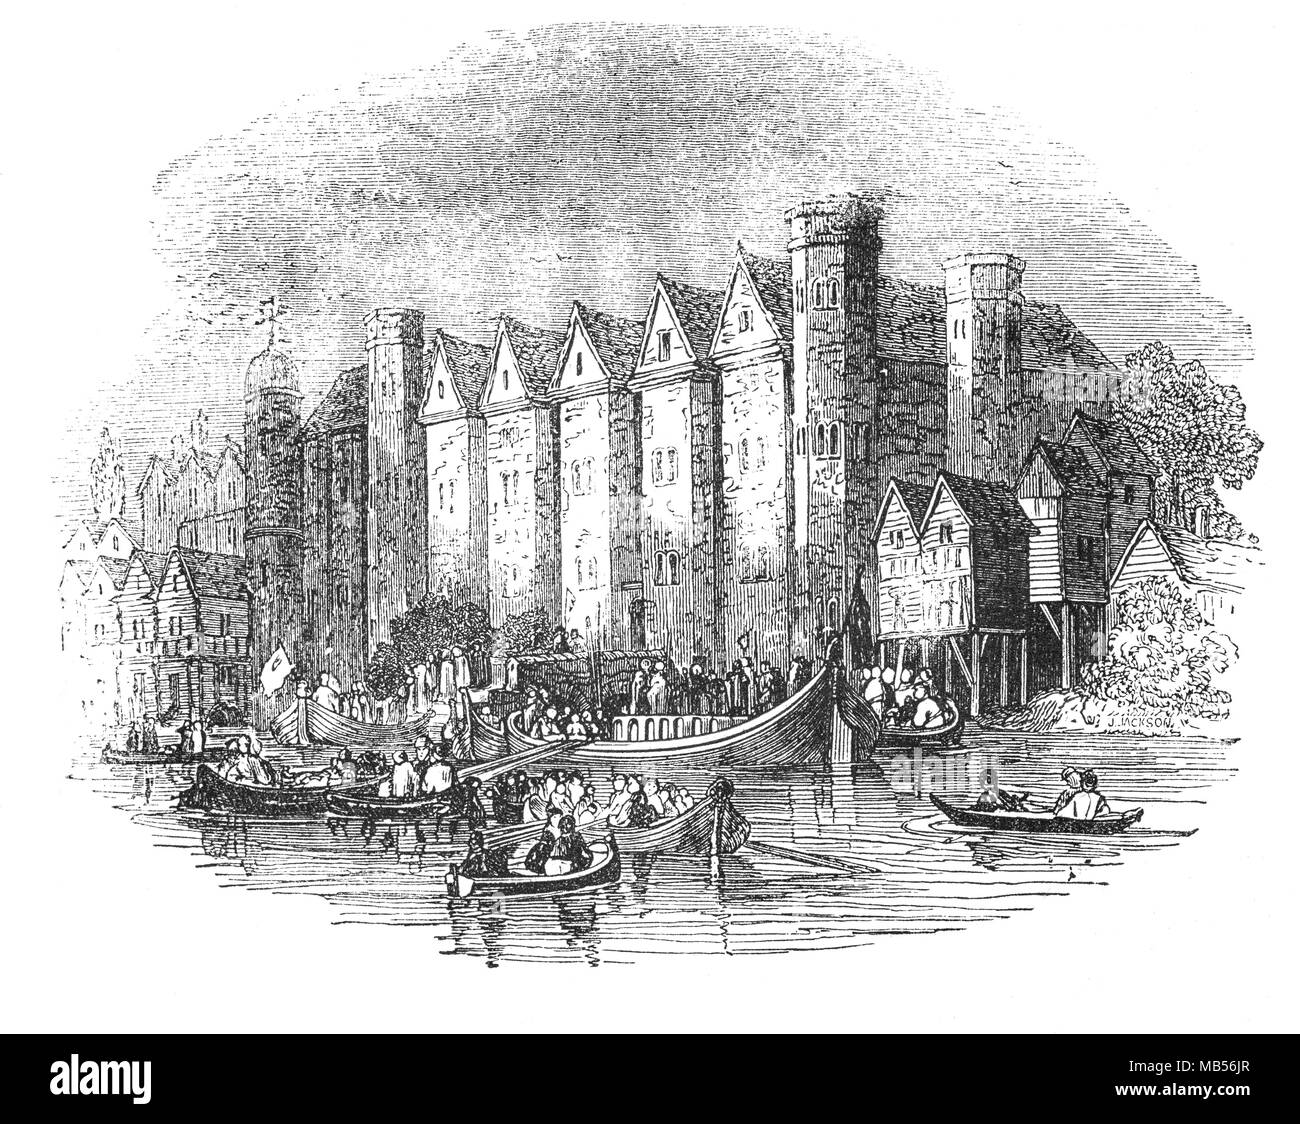 Baynard's Castle bezieht sich auf eine mittelalterliche Palast aus dem 14. Jahrhundert auf Land, das von der Themse zurückgefordert worden war, errichtet. Das Haus wurde nach 1428 wieder aufgebaut und wurde die Londoner Zentrale des Hauses York während der Kriege der Rosen. Sowohl König Edward IV und Königin Maria I. von England waren auf der Burg gekrönt. Es war in den Ruinen nach dem großen Brand von London 1666. Stockfoto